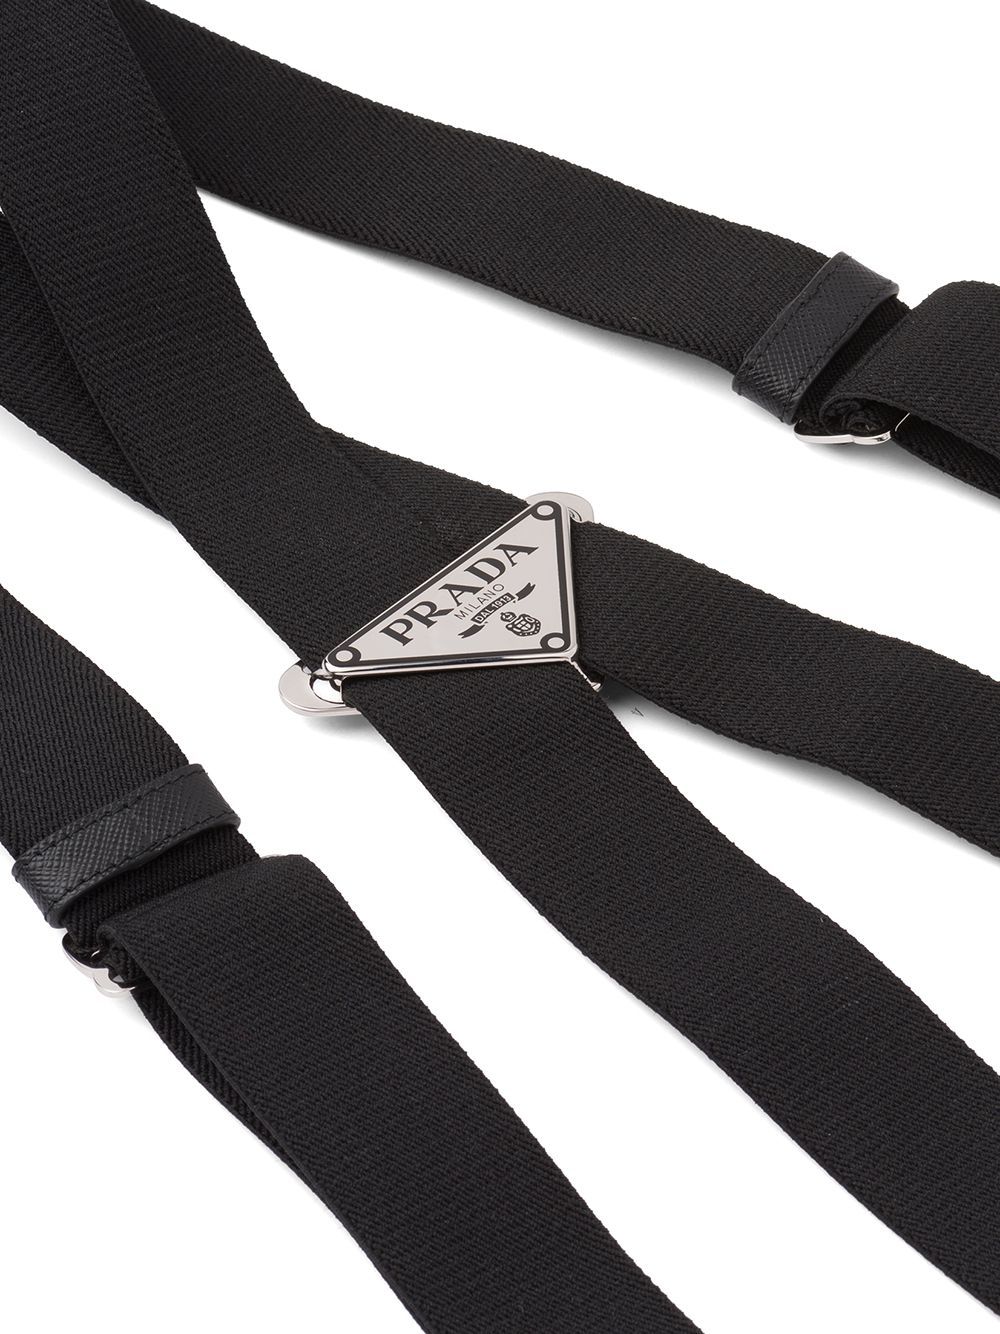 Prada triangle-logo braces in Black | Stylemi